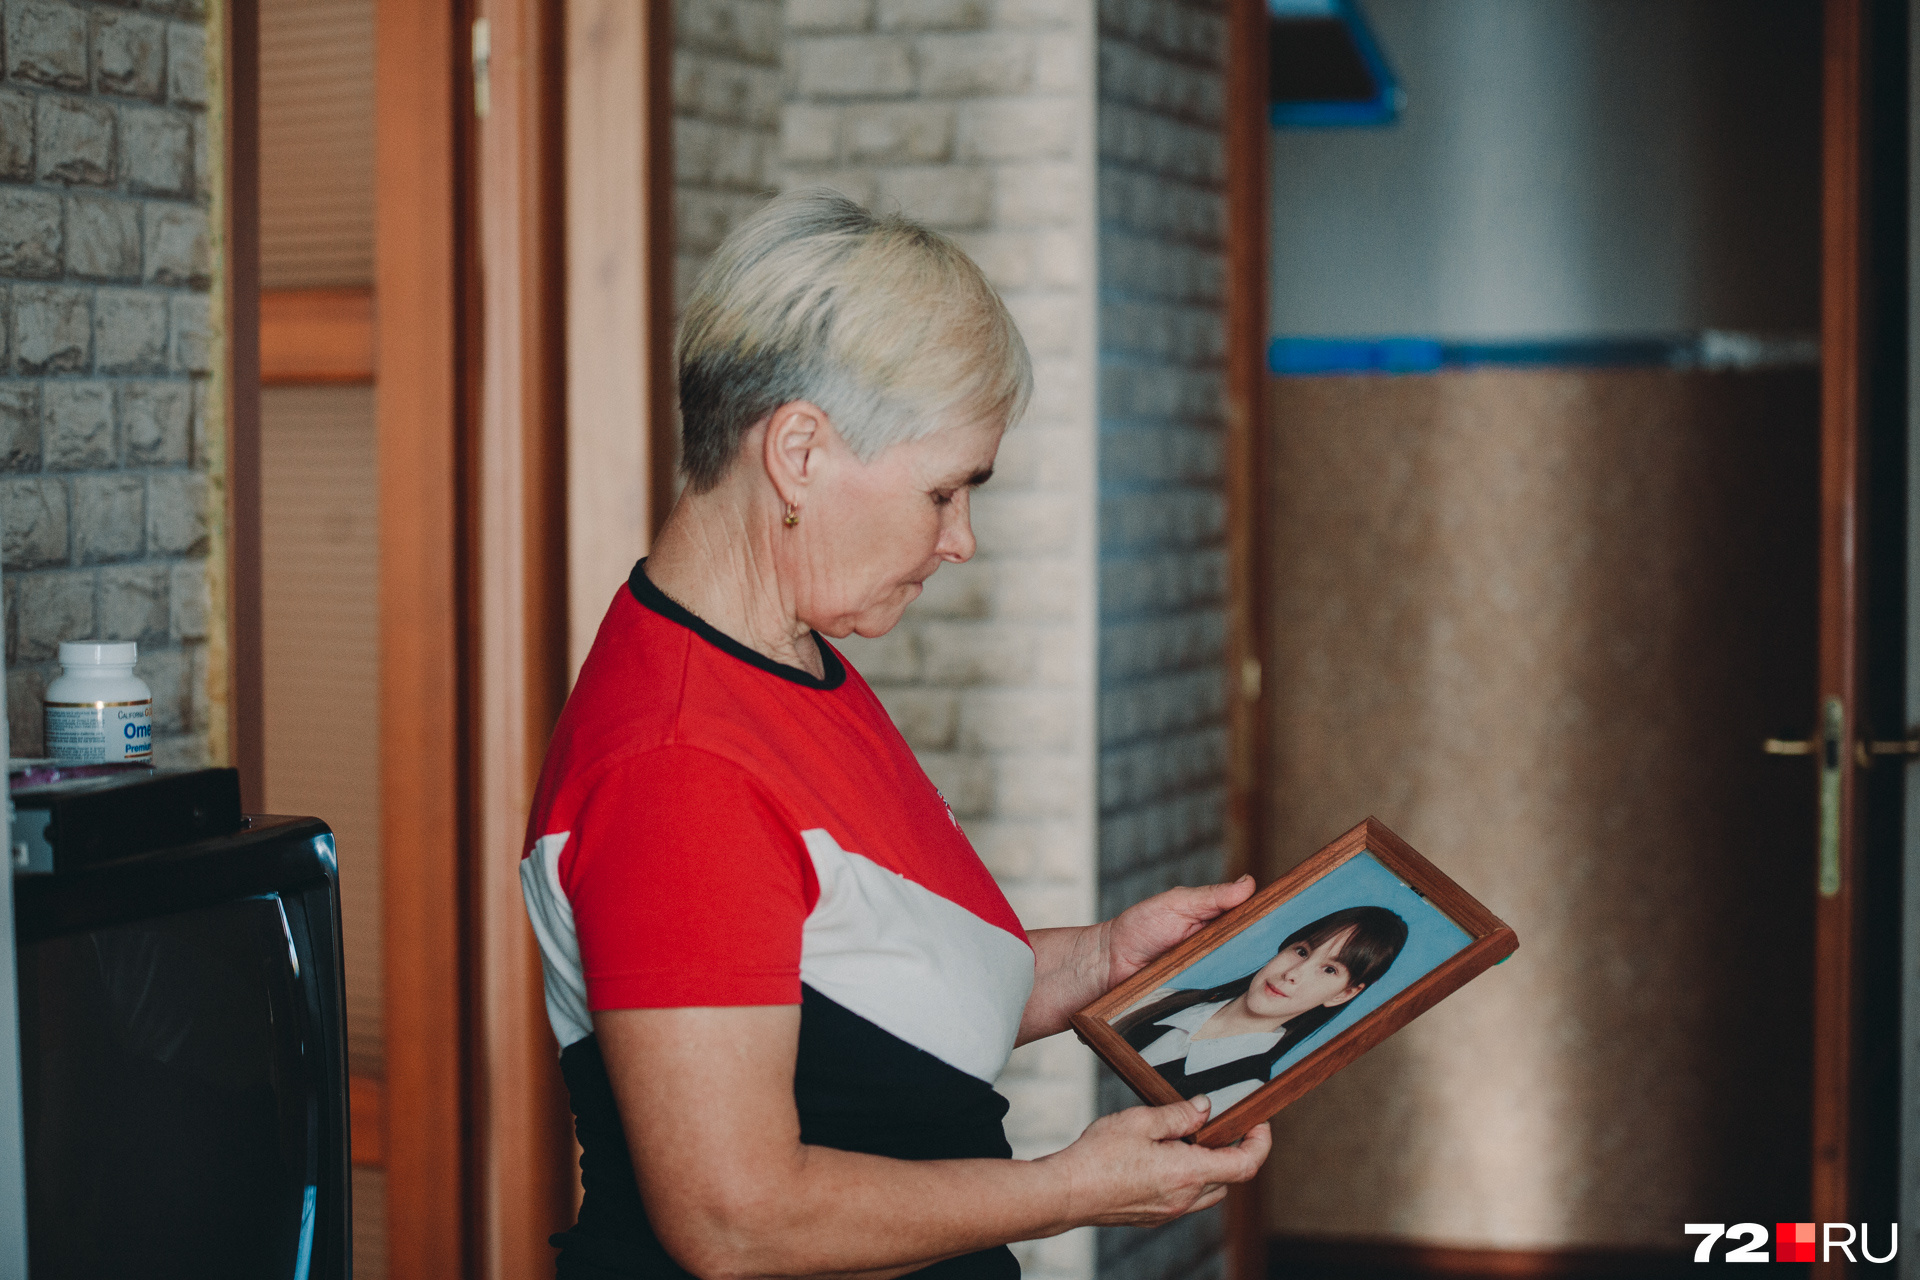 Людмила Ложкина после пропажи дочери рассылала письма в детские дома и приюты в надежде, что в таких местах оказалась ее девочка. Из всех мест, куда обращалась женщина, пришли отрицательные ответы